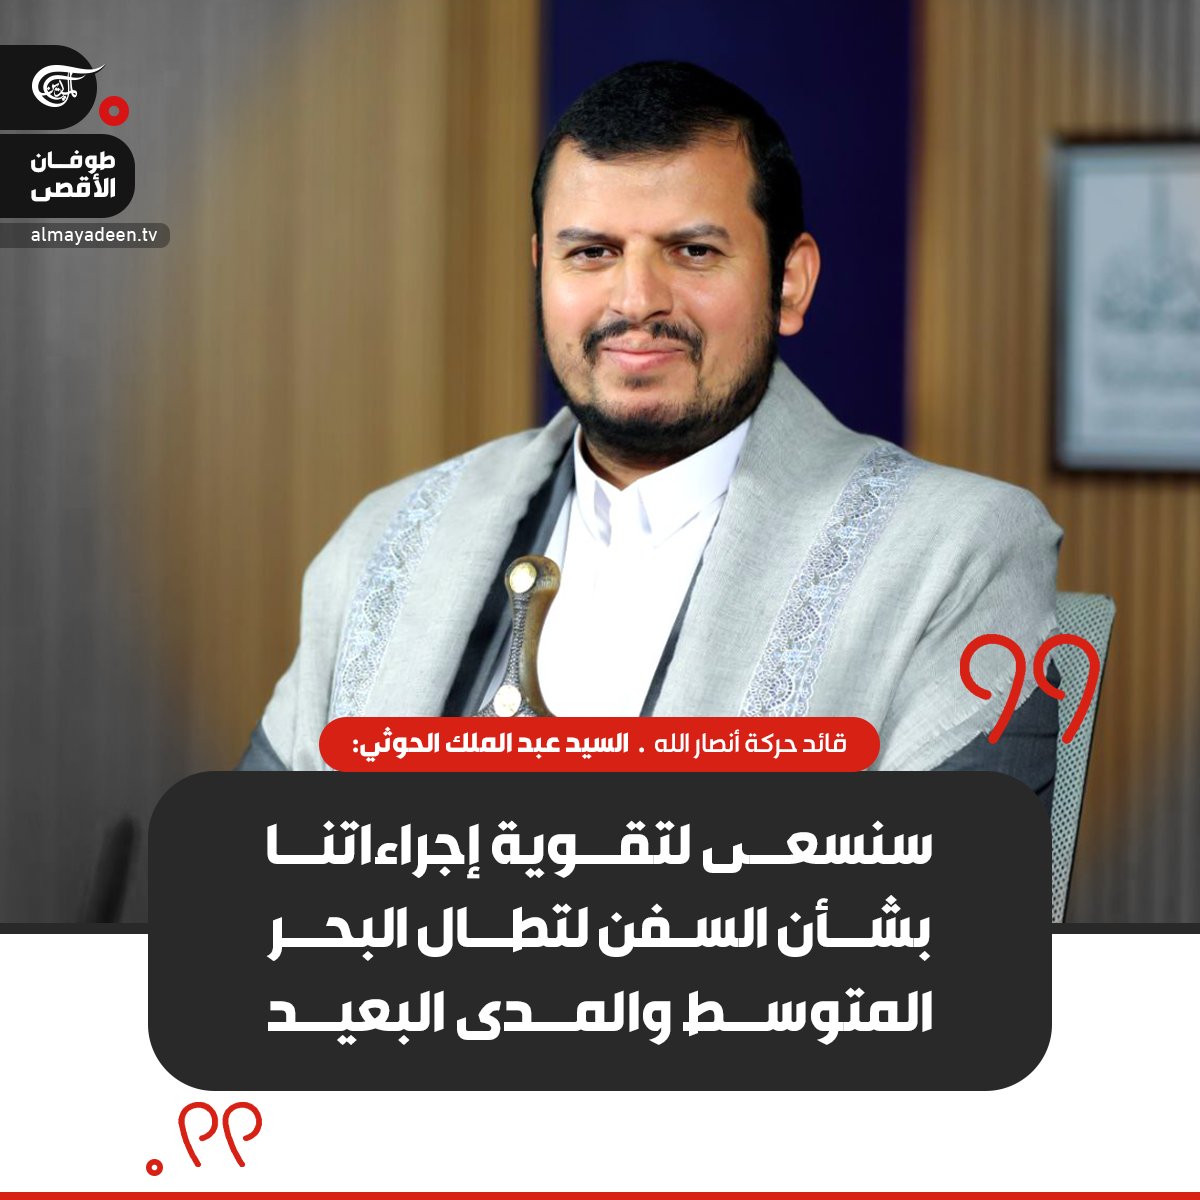 قائد حركة أنصار الله السيد عبد الملك الحوثي: محاولاتهم اعتراض ضرباتنا للسفن سوف تفشل وسنتمكن من تجوازها

#اليمن #صنعاء
#فلسطين_المحتلة
#الميادين